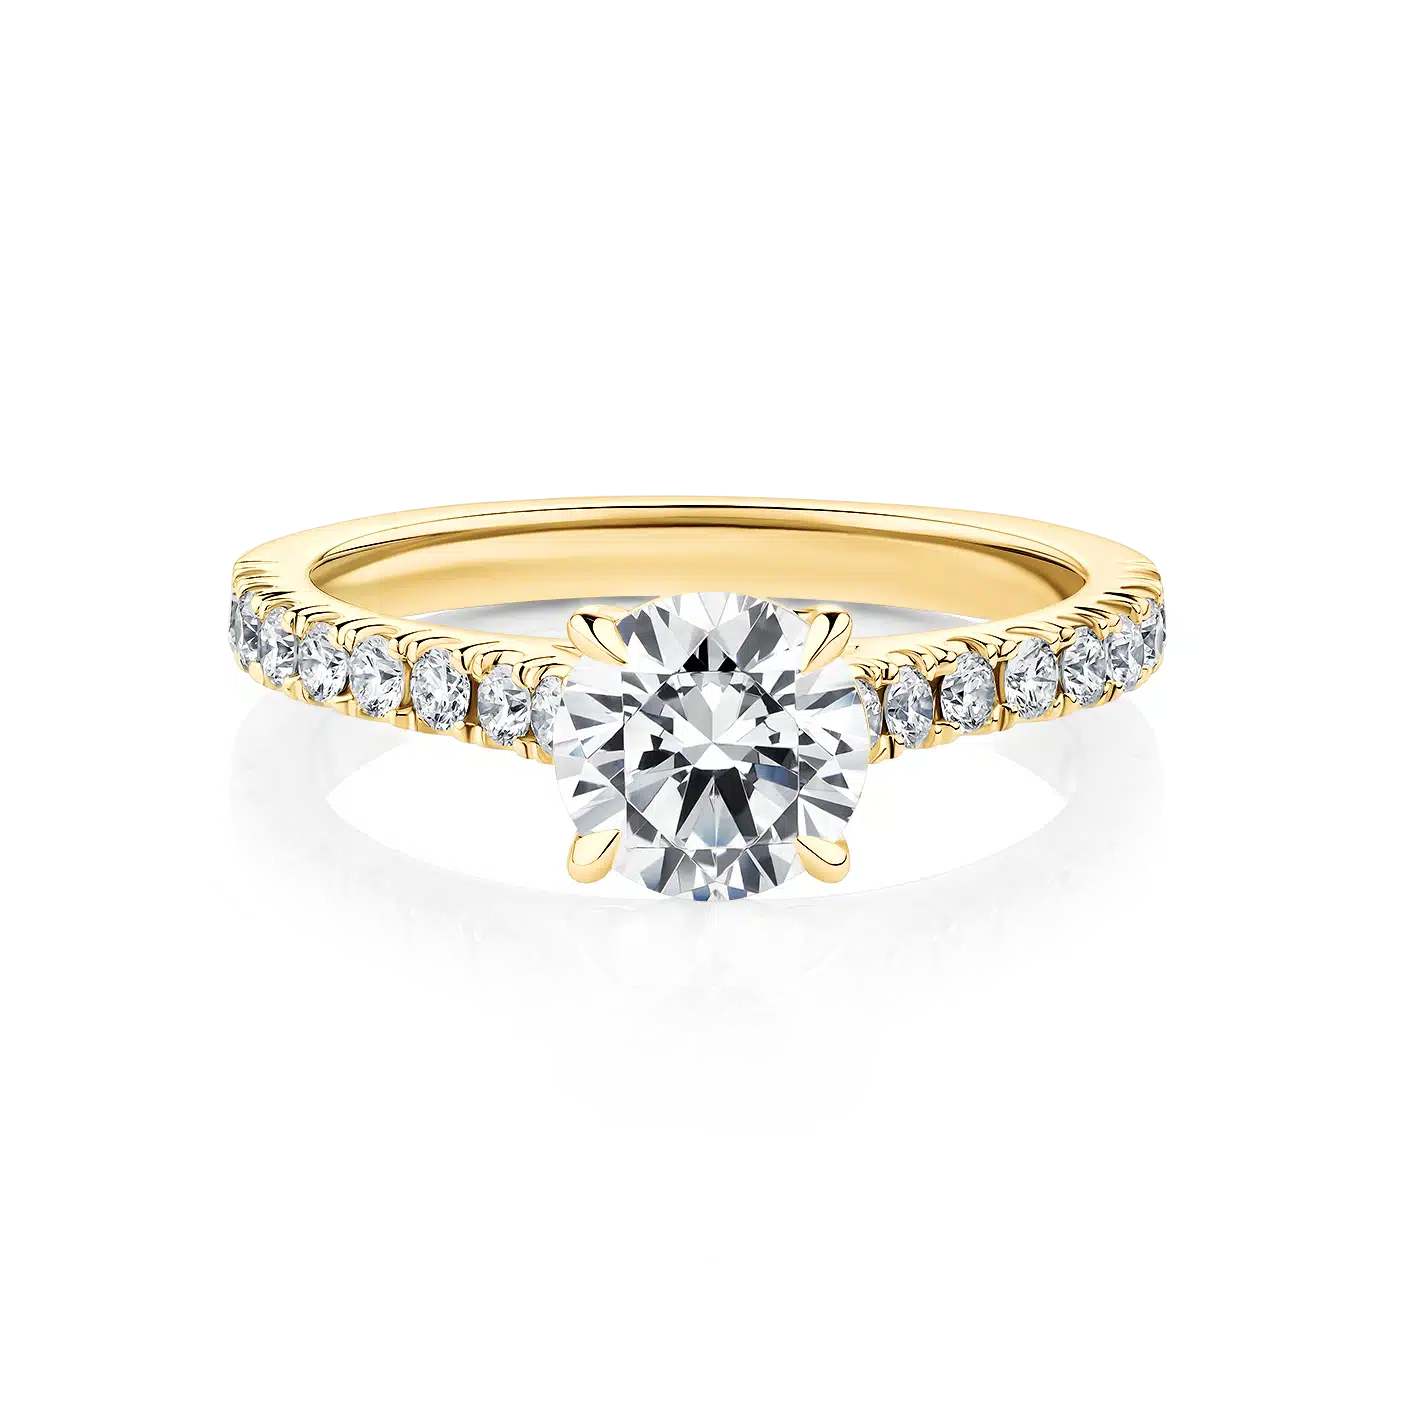 Bottlebrush-Yellow-Gold-Round-Diamond-Engagement-Ring